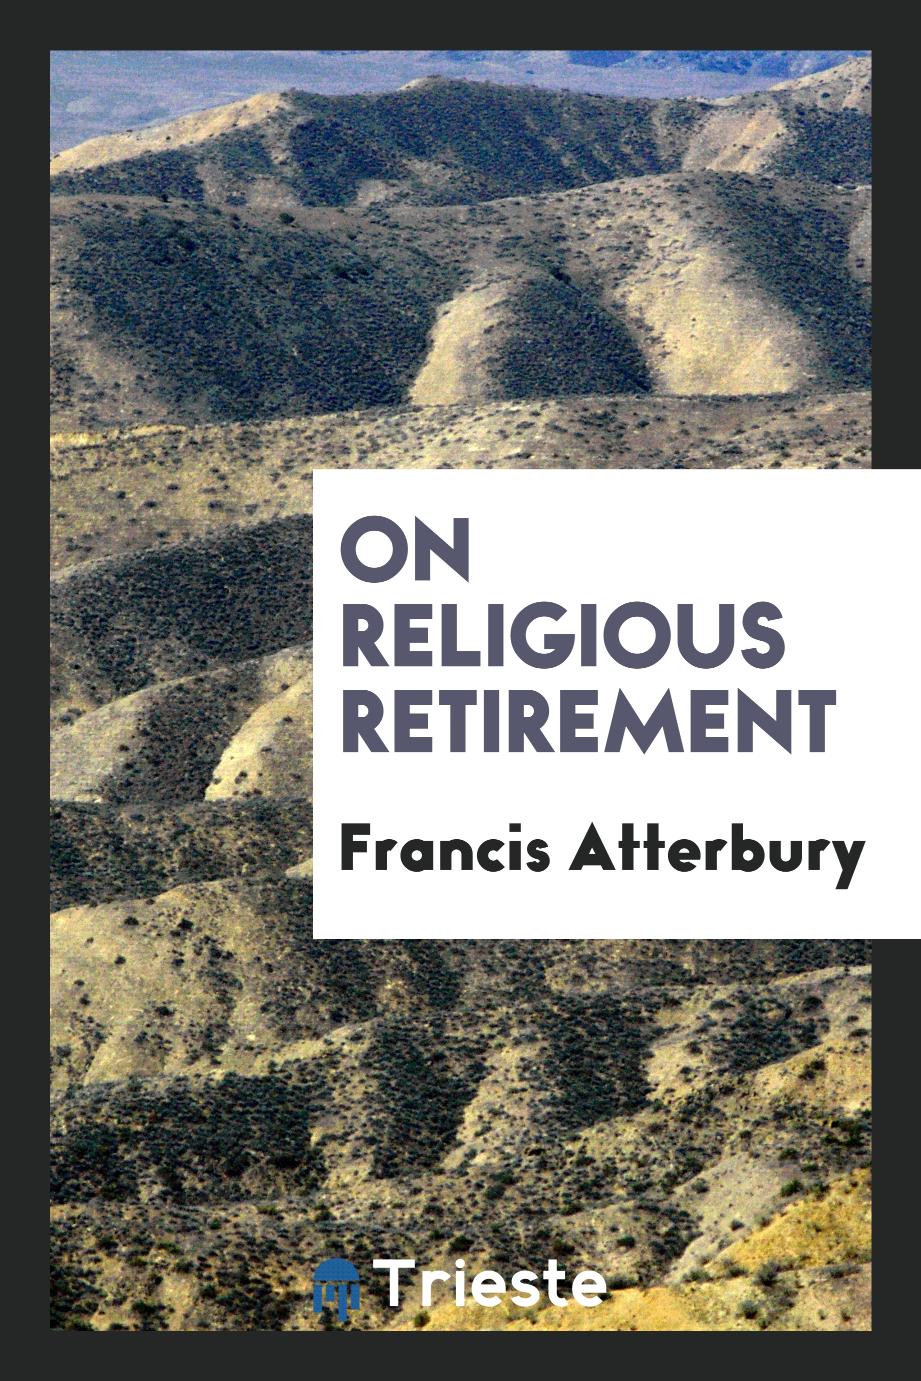 On religious retirement